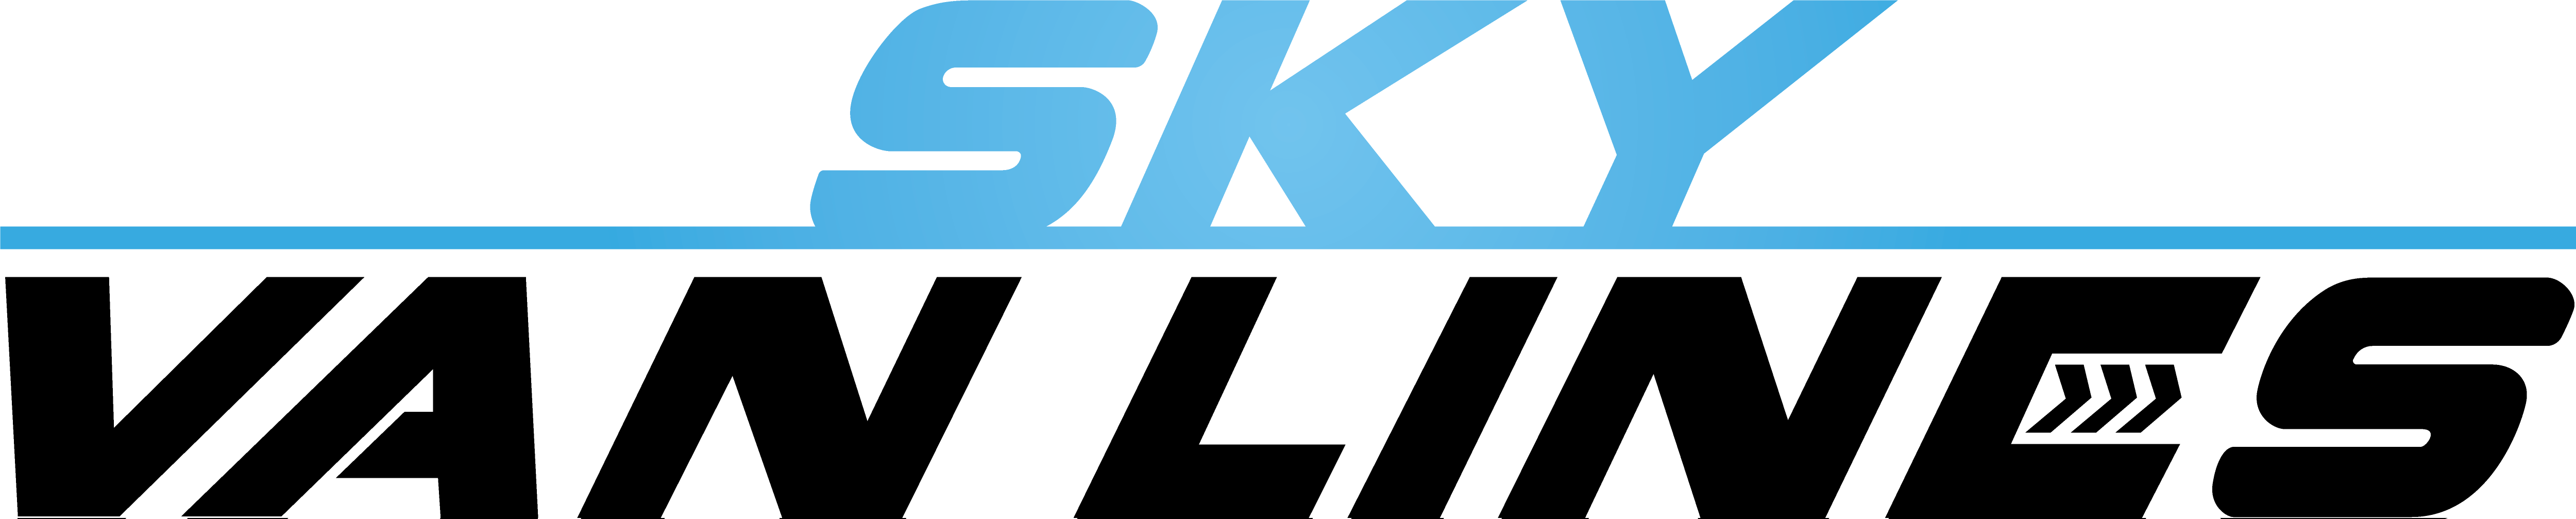 Sky-Van-Lines-Logo-1.png